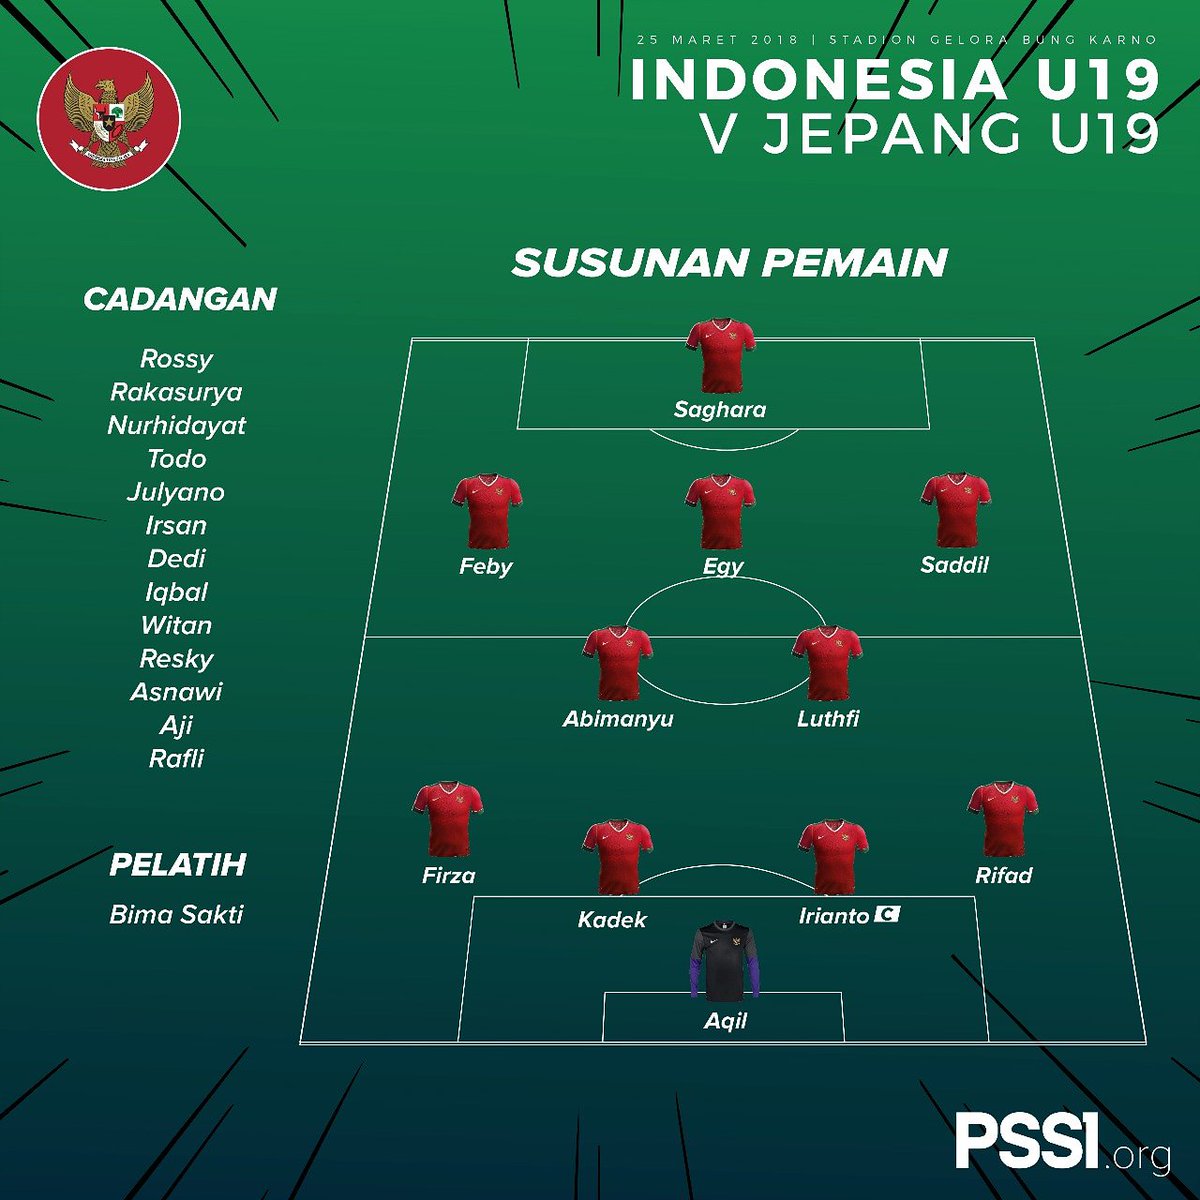 Timnas U19 Indonesia Vs Jepang Inilah Susunan Pemain Indonesia Egy Di Belakang Hanis Saghara Tribun Batam